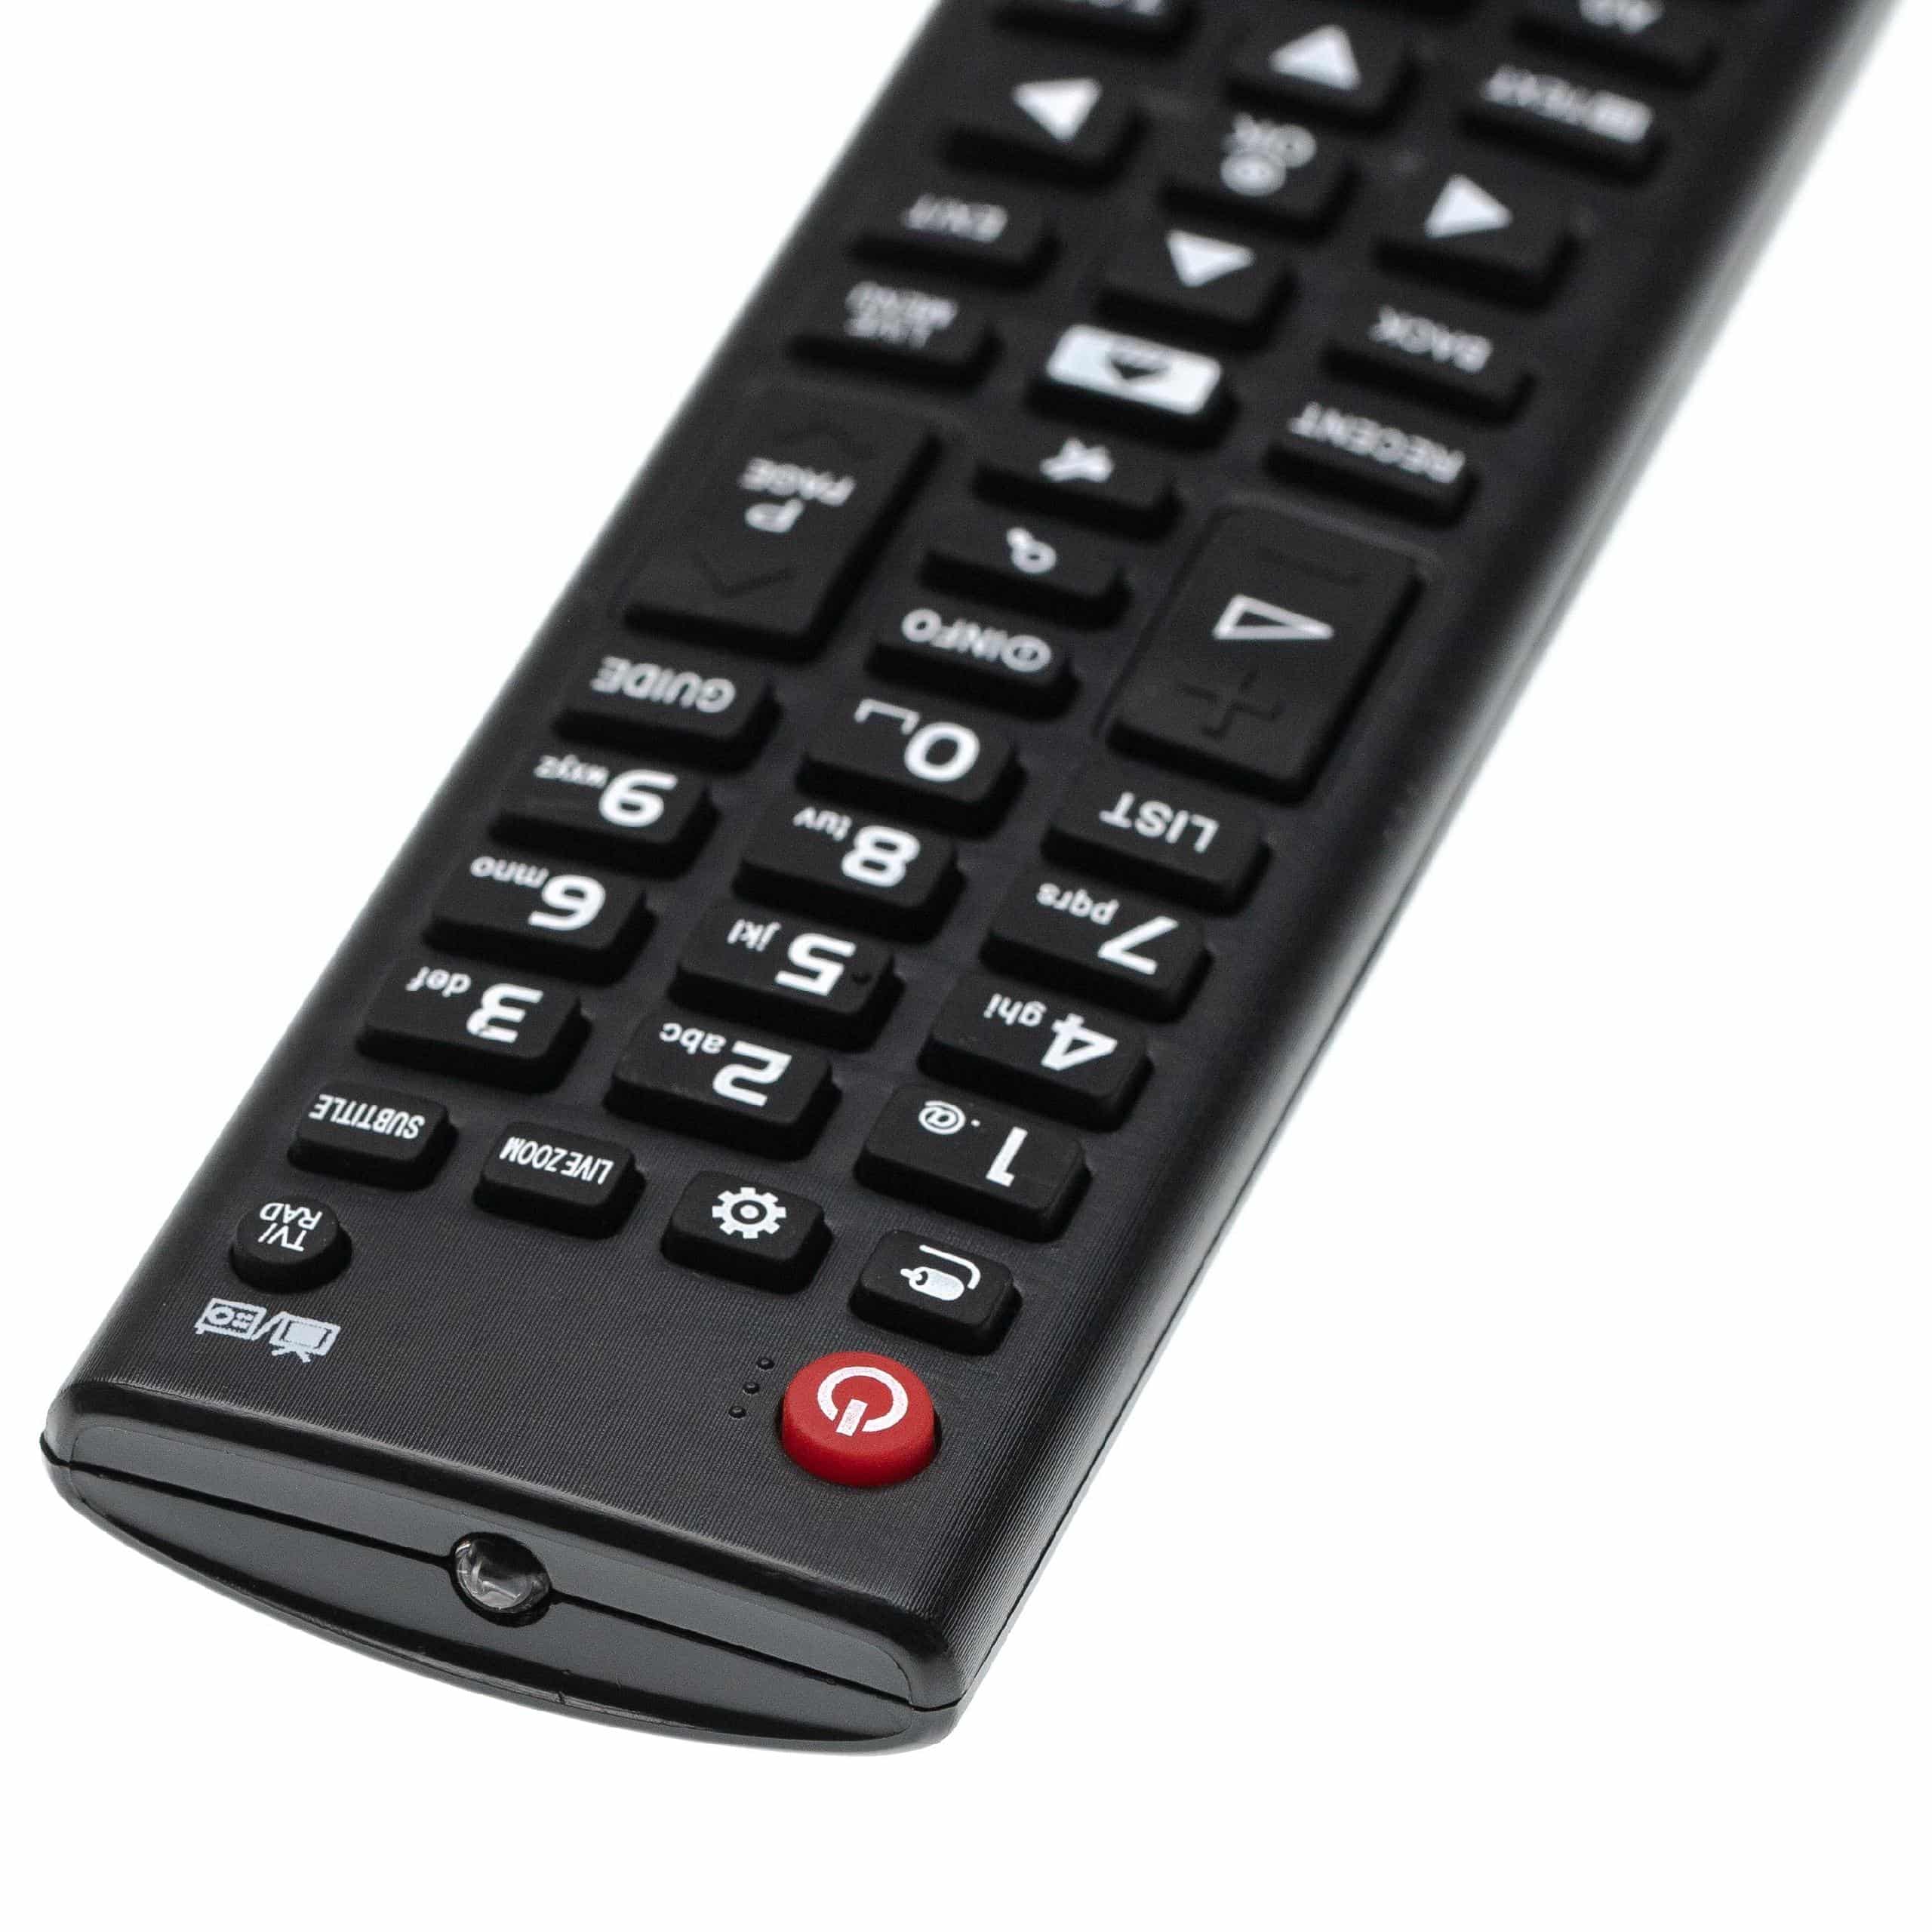 Fernbedienung als Ersatz für LG AKB74915324 für LG Fernseher, TV